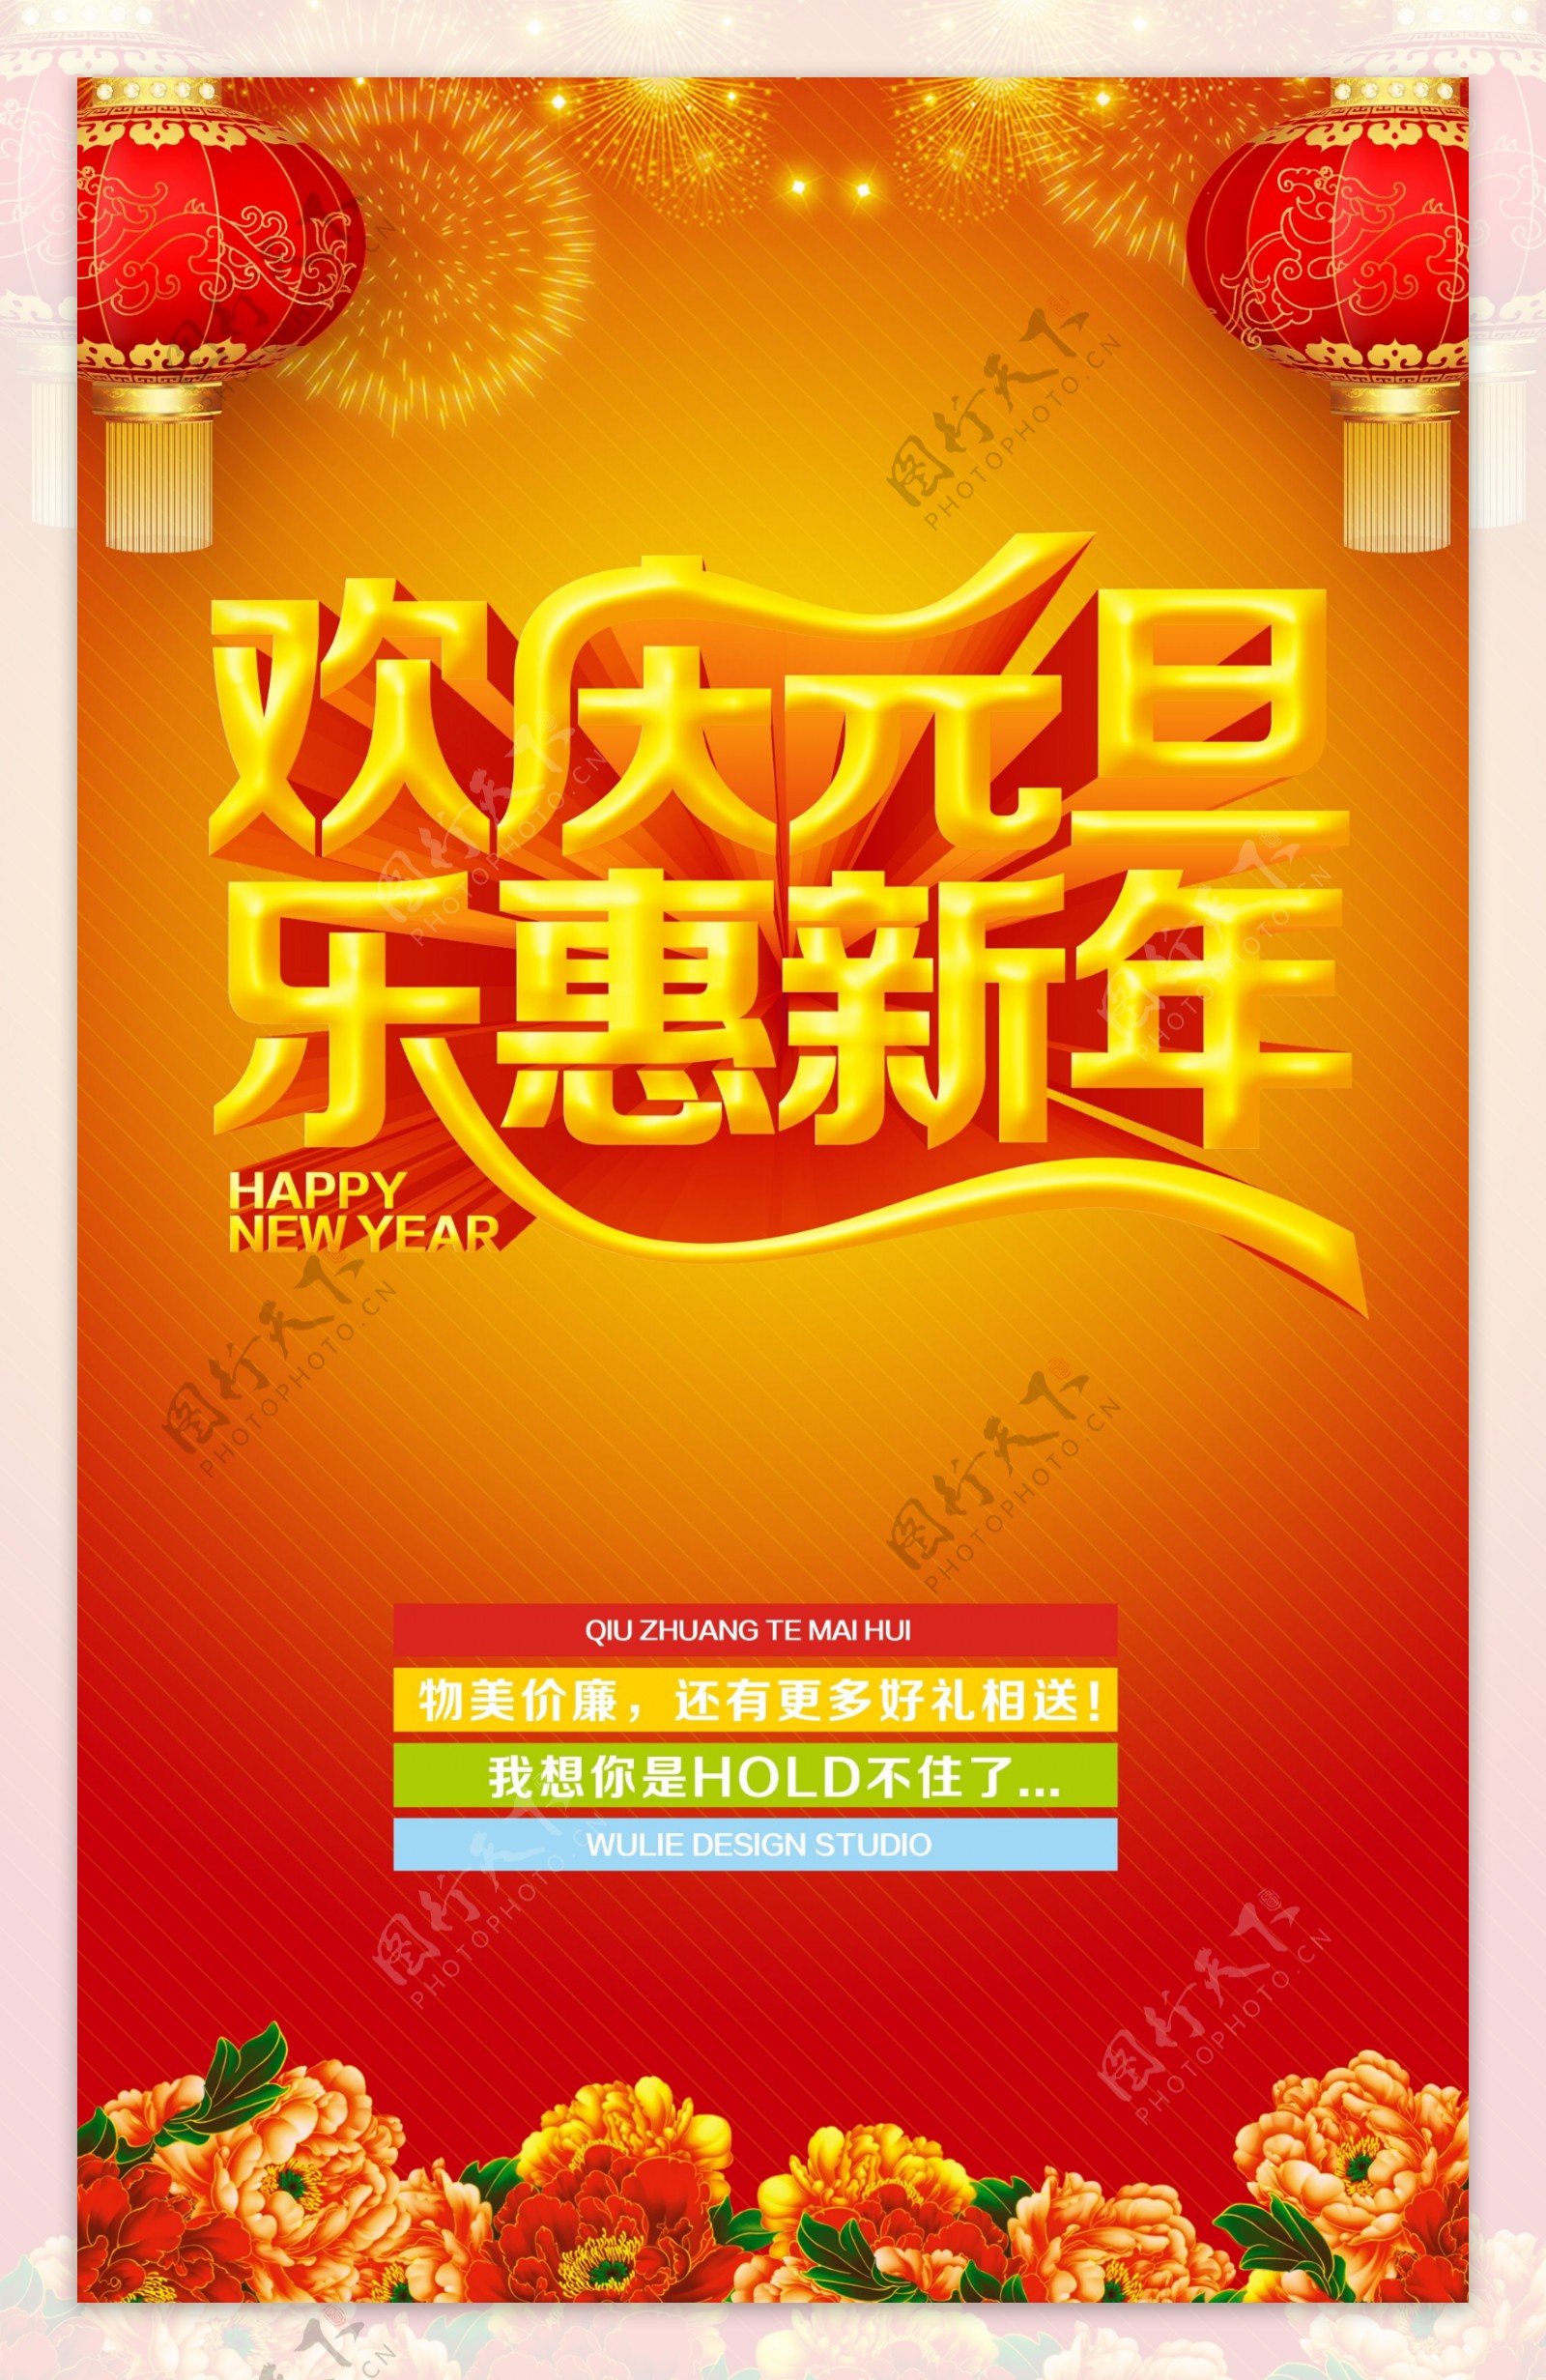 欢庆元旦乐惠新年海报设计PSD素材